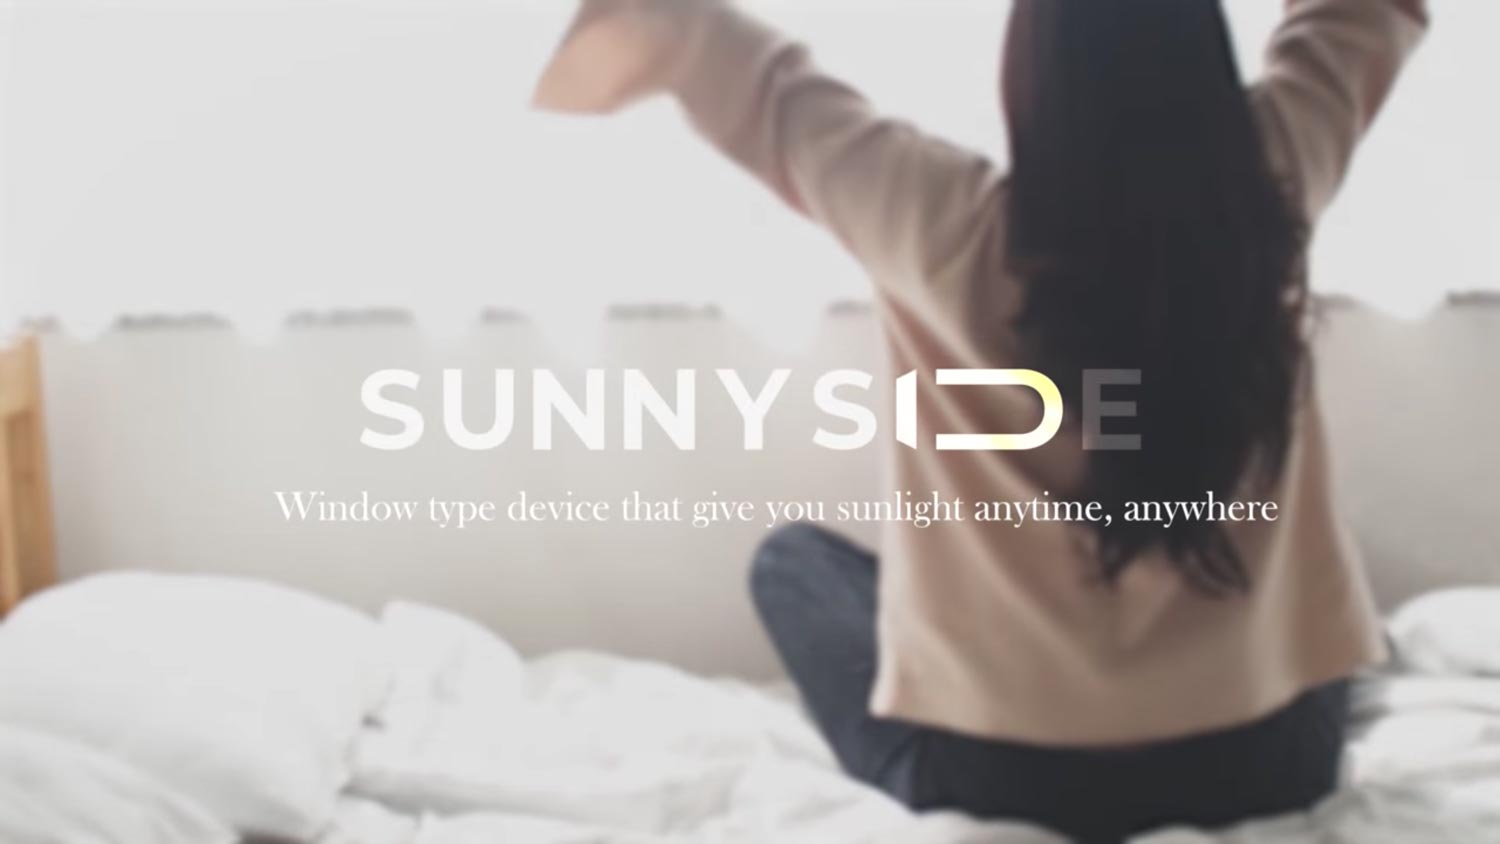 Lampu SunnySide Menawarkan Pencahayaan Seperti Matahari Sebenar Dalam Rumah